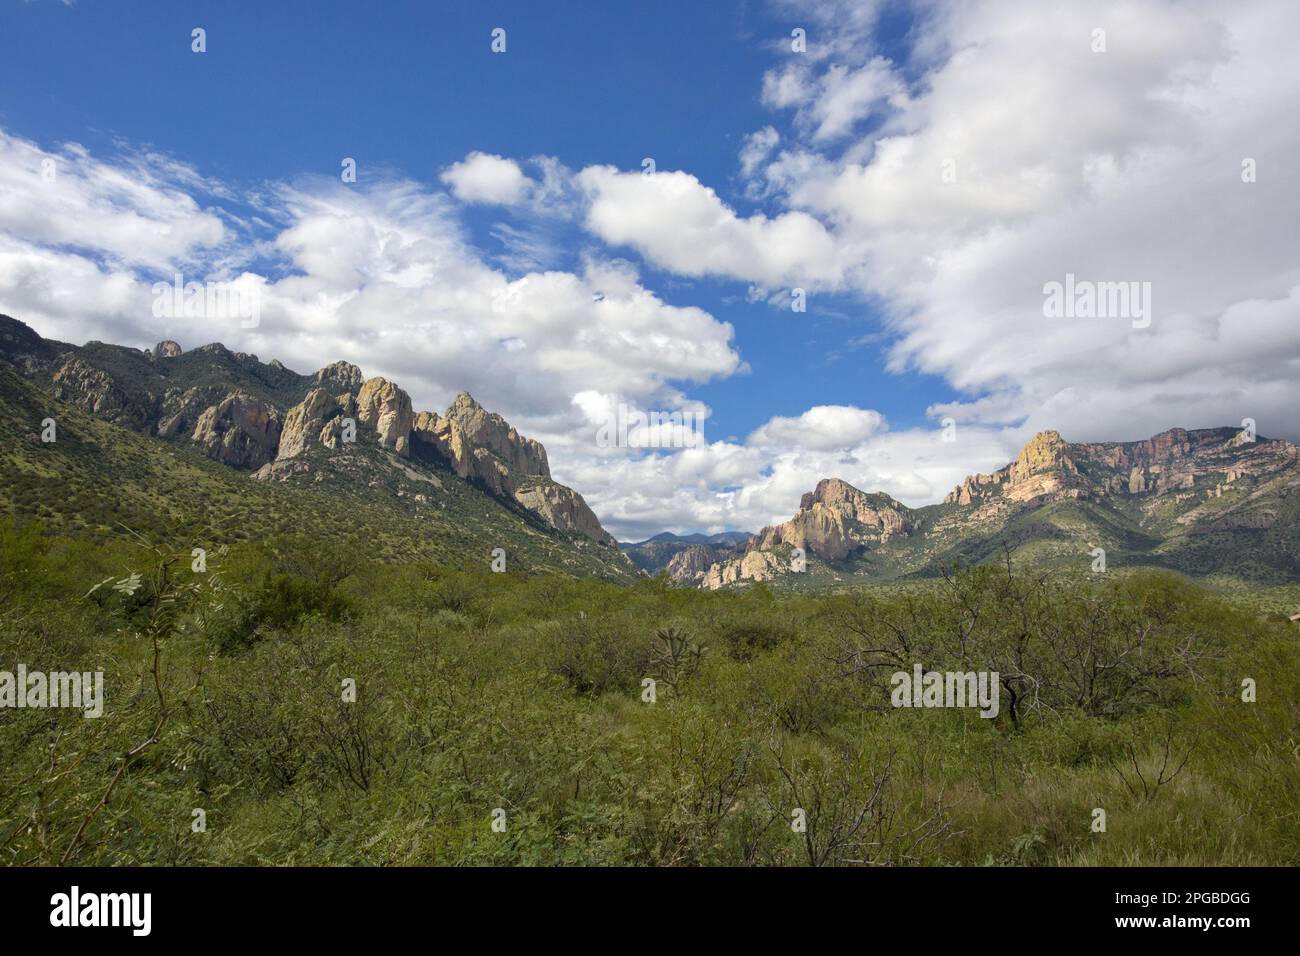 Wunderschöne abgelegene Chiricahua Mountains im Süden Arizonas, USA, mit felsigen Gipfeln, grünem Vordergrund und blauem Sommerhimmel im horizontalen Format Stockfoto